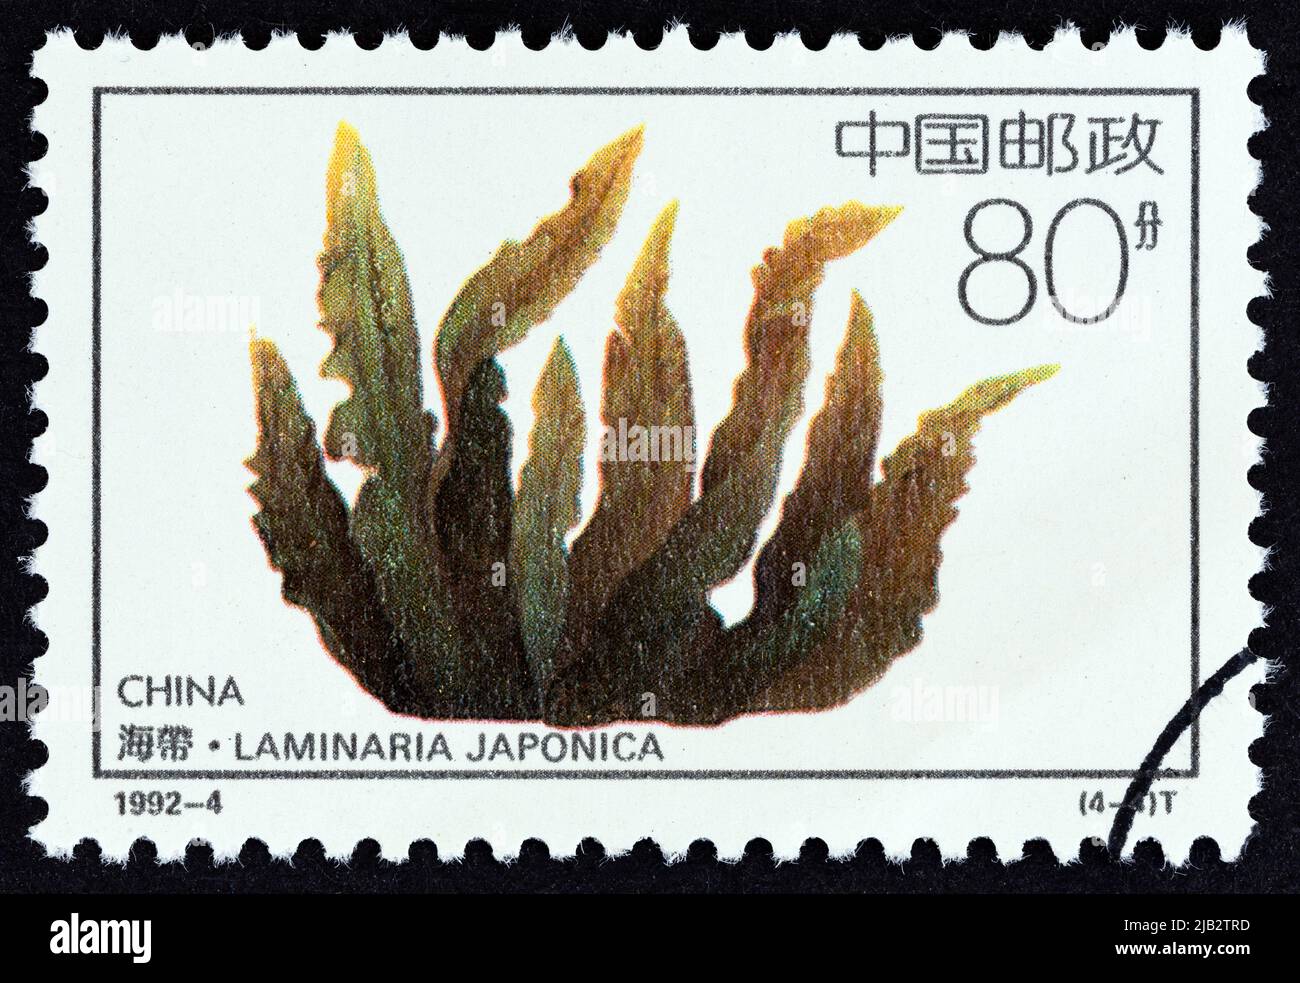 CHINE - VERS 1992 : un timbre imprimé en Chine à partir du numéro « Offshore Breeding Projects » montre Laminaria japonica, vers 1992. Banque D'Images